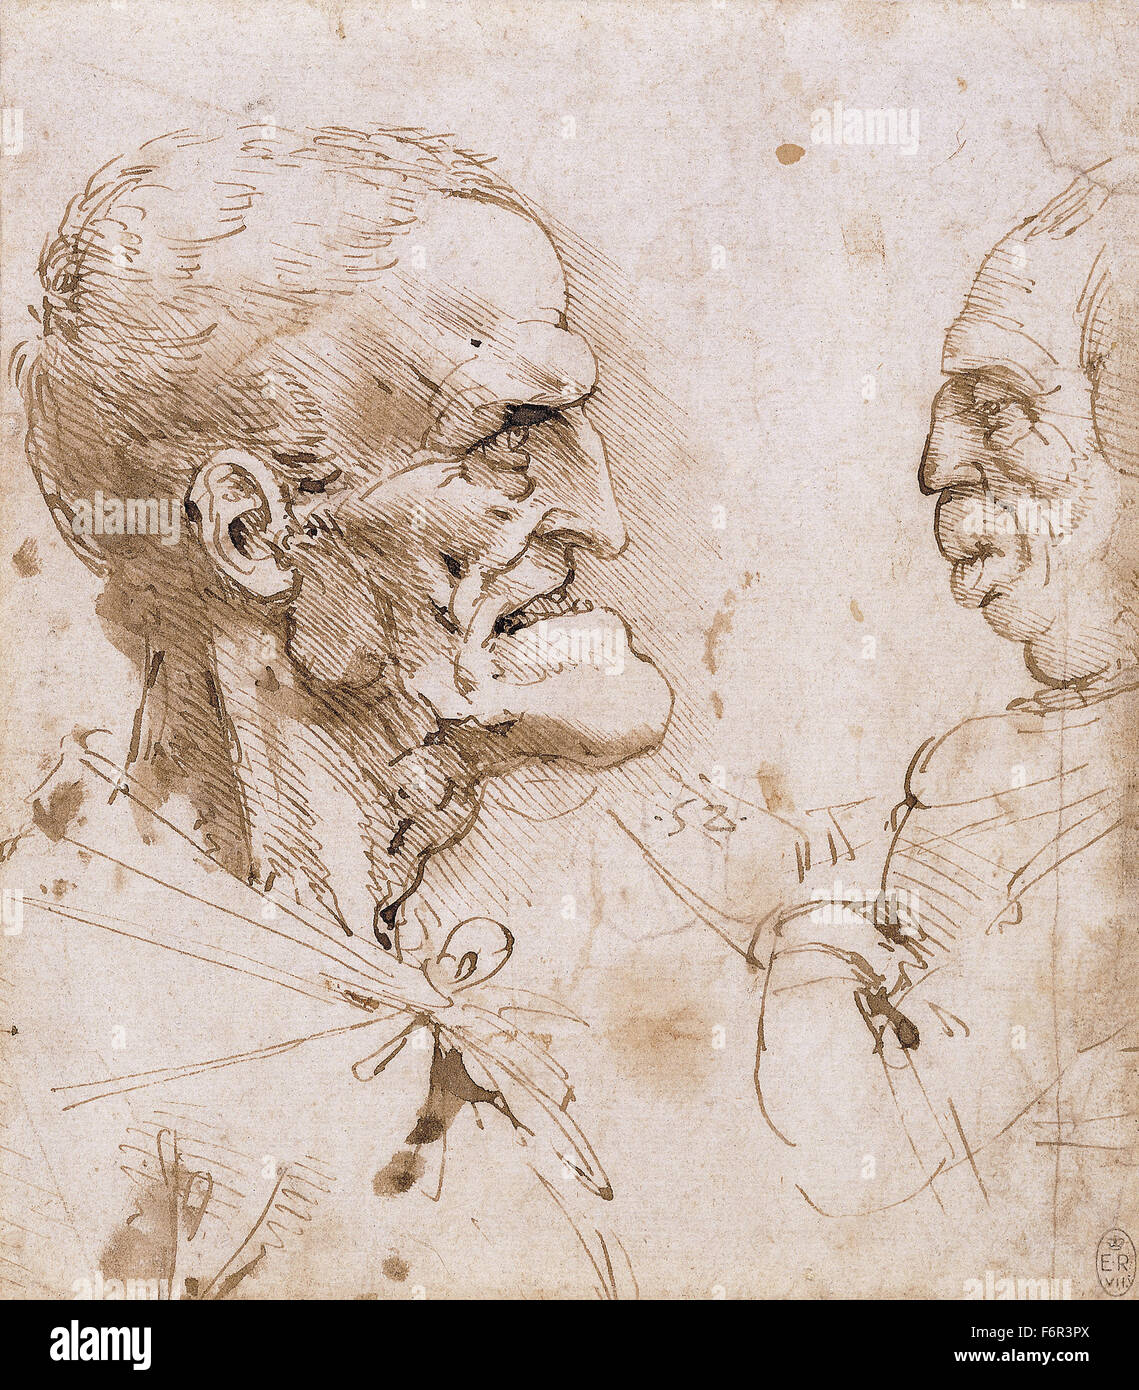 Leonardo da Vinci - zwei groteske Profile konfrontiert Stockfoto